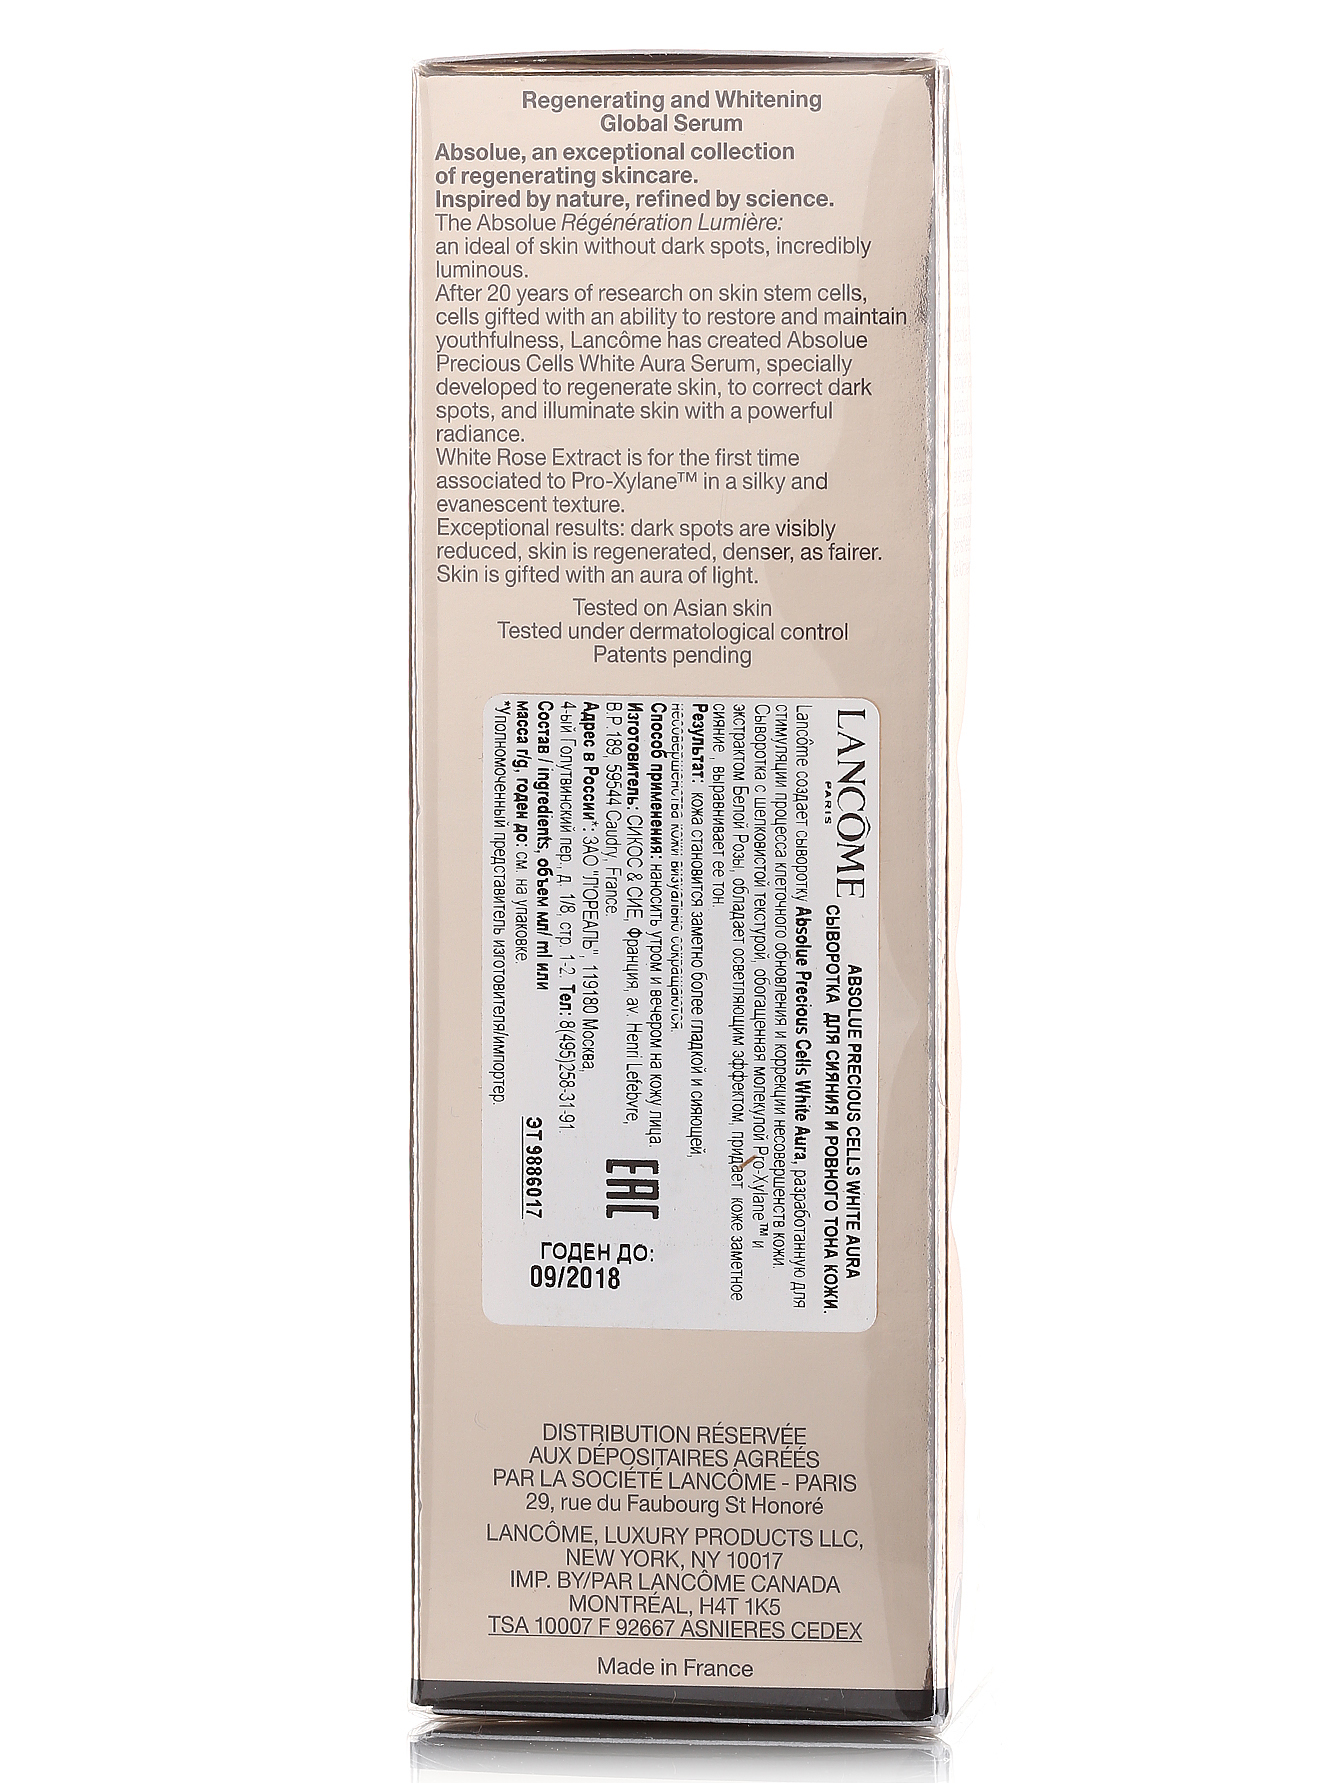  Сыворотка для сияния и ровного тона кожи - Absolue, 30ml - Модель Верх-Низ